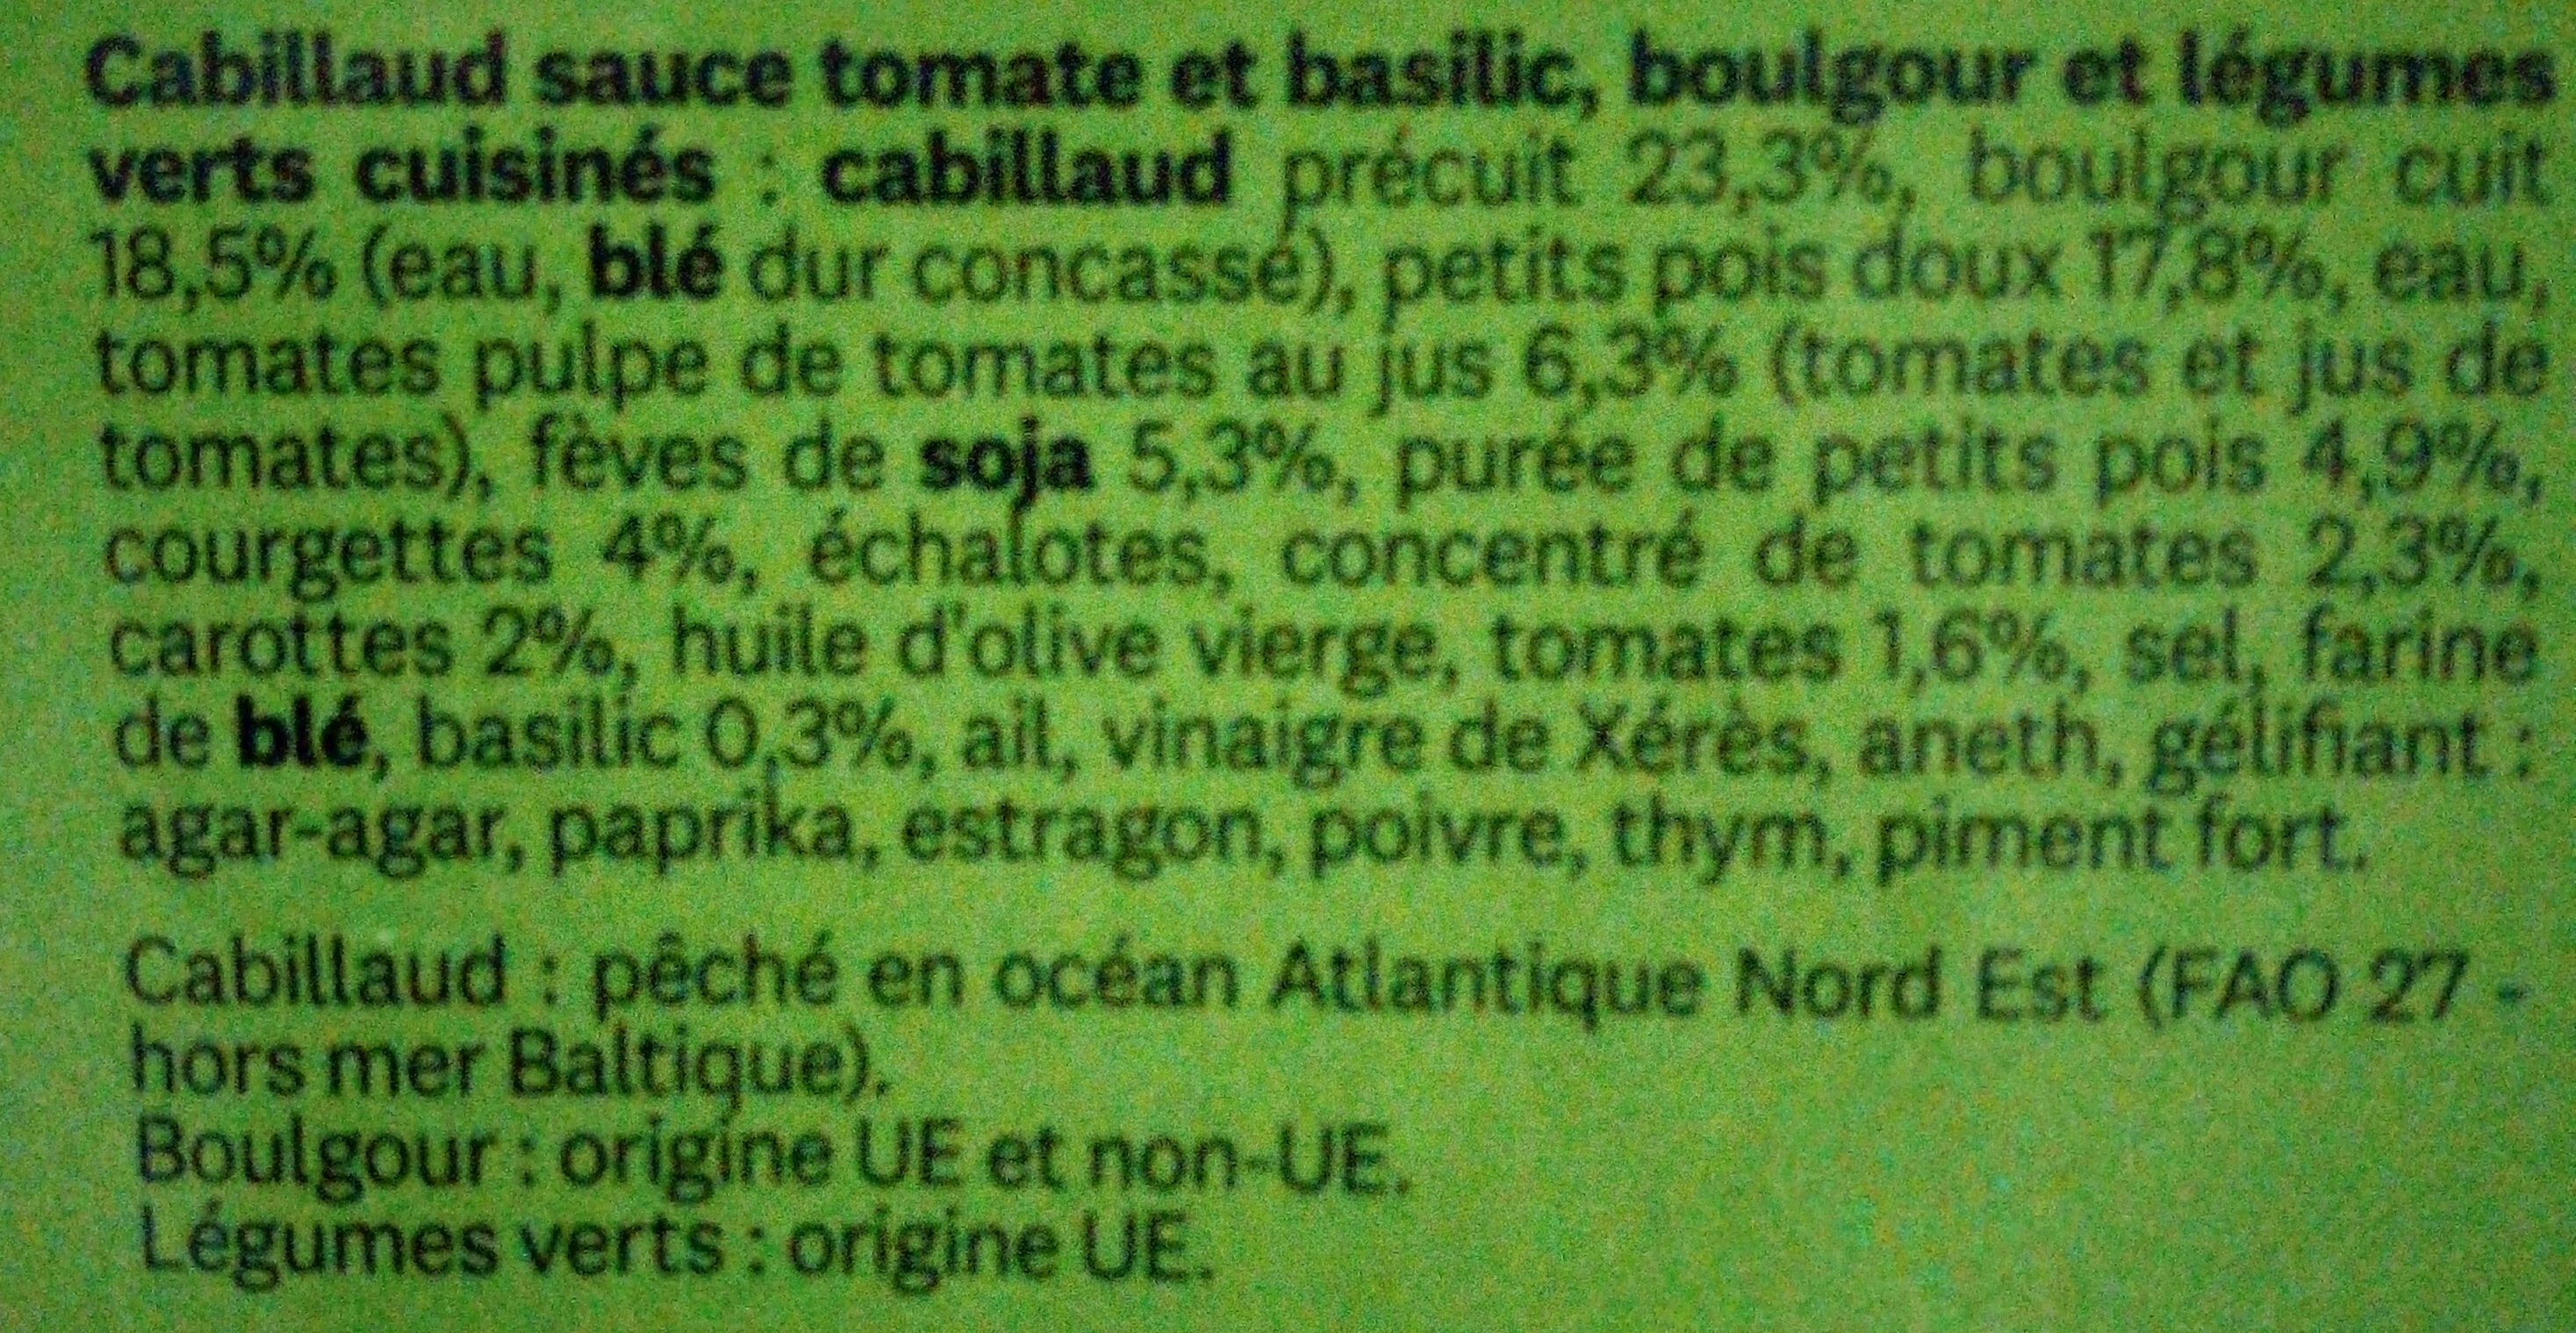 Simple par Nature - Cabillaud sauce tomate basilic, boulgour et légumes verts cuisinés - المكونات - fr